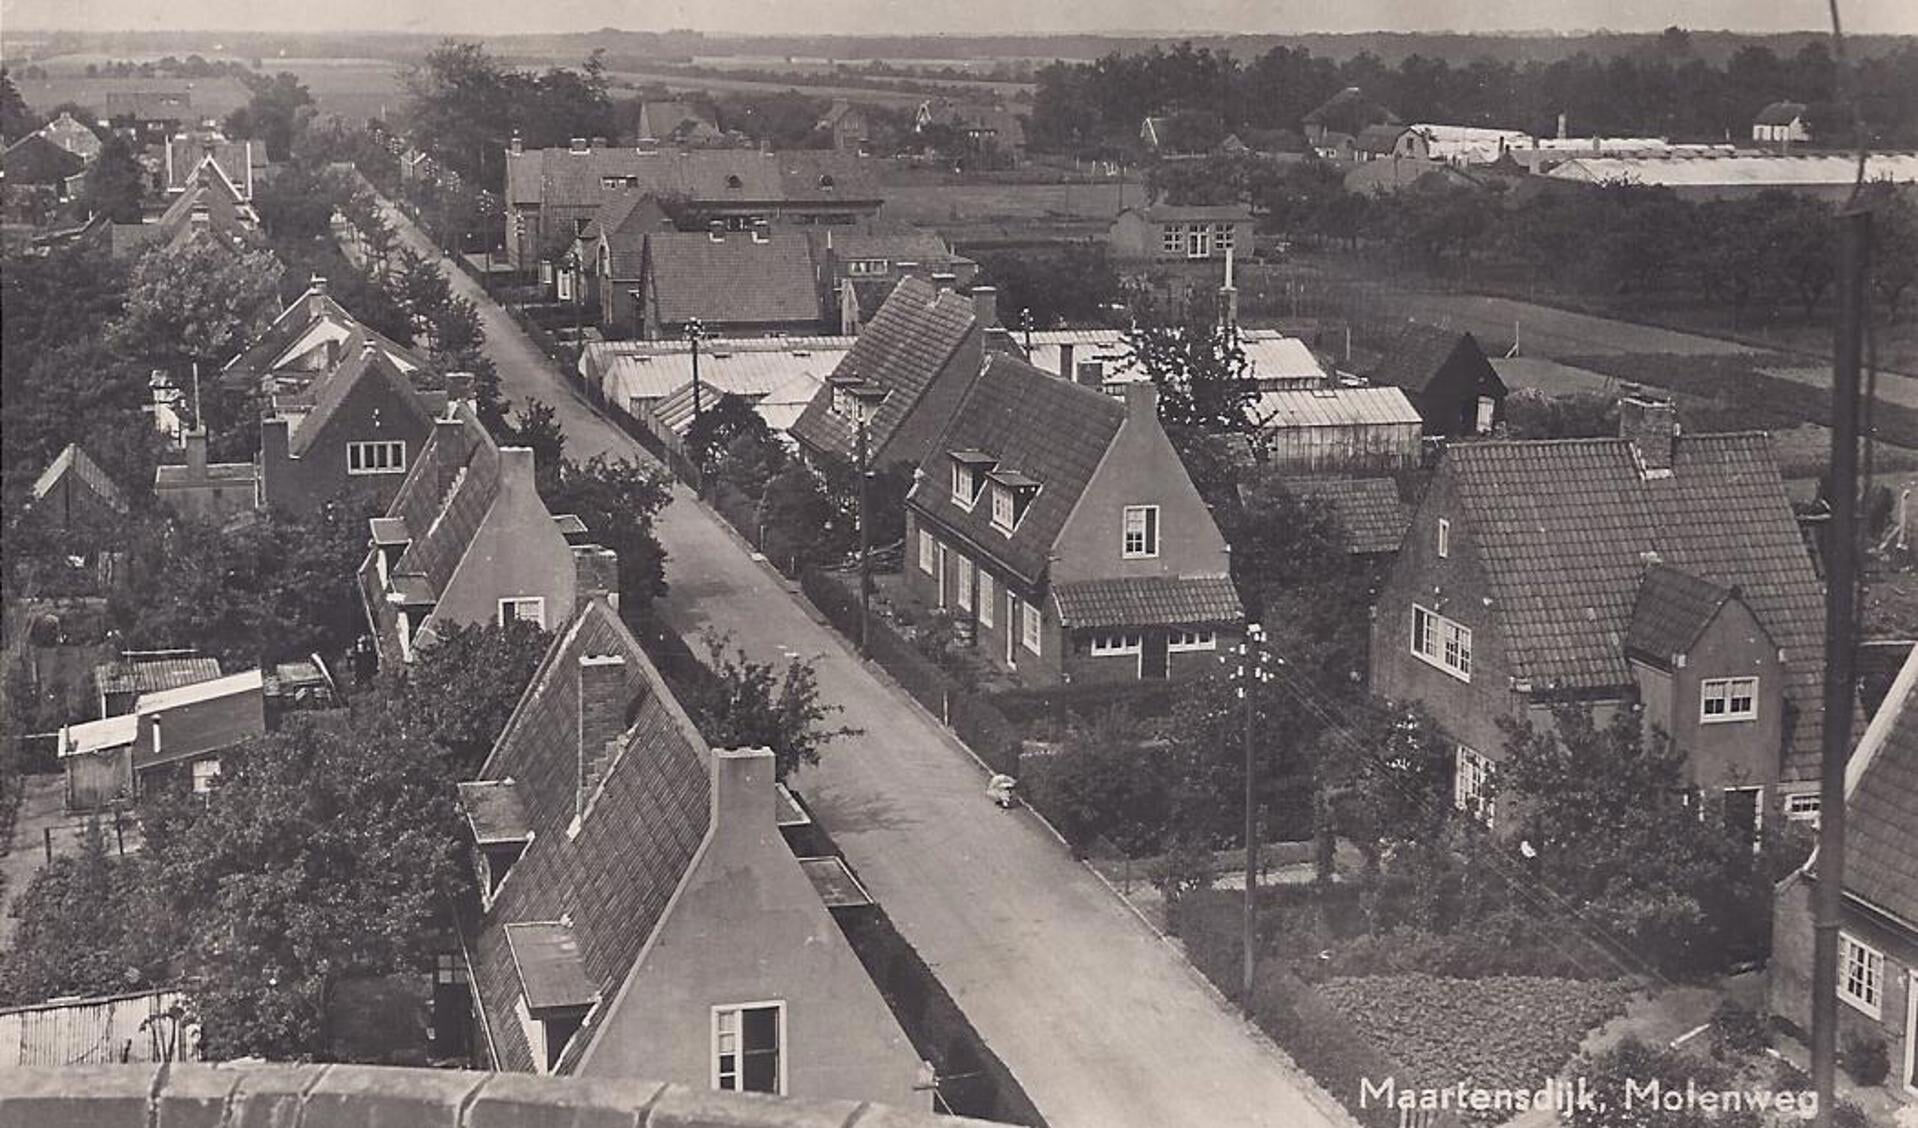  Deze foto van de Maartensdijkse Molenweg is genomen vanaf molen De Hoop en toont de in 1922 gebouwde 10 huizen voor mensen met 'huwelijksvoorrang'. Verder zijn de kassen van van der Heijden en de School met den Bijbel zichtbaar. 